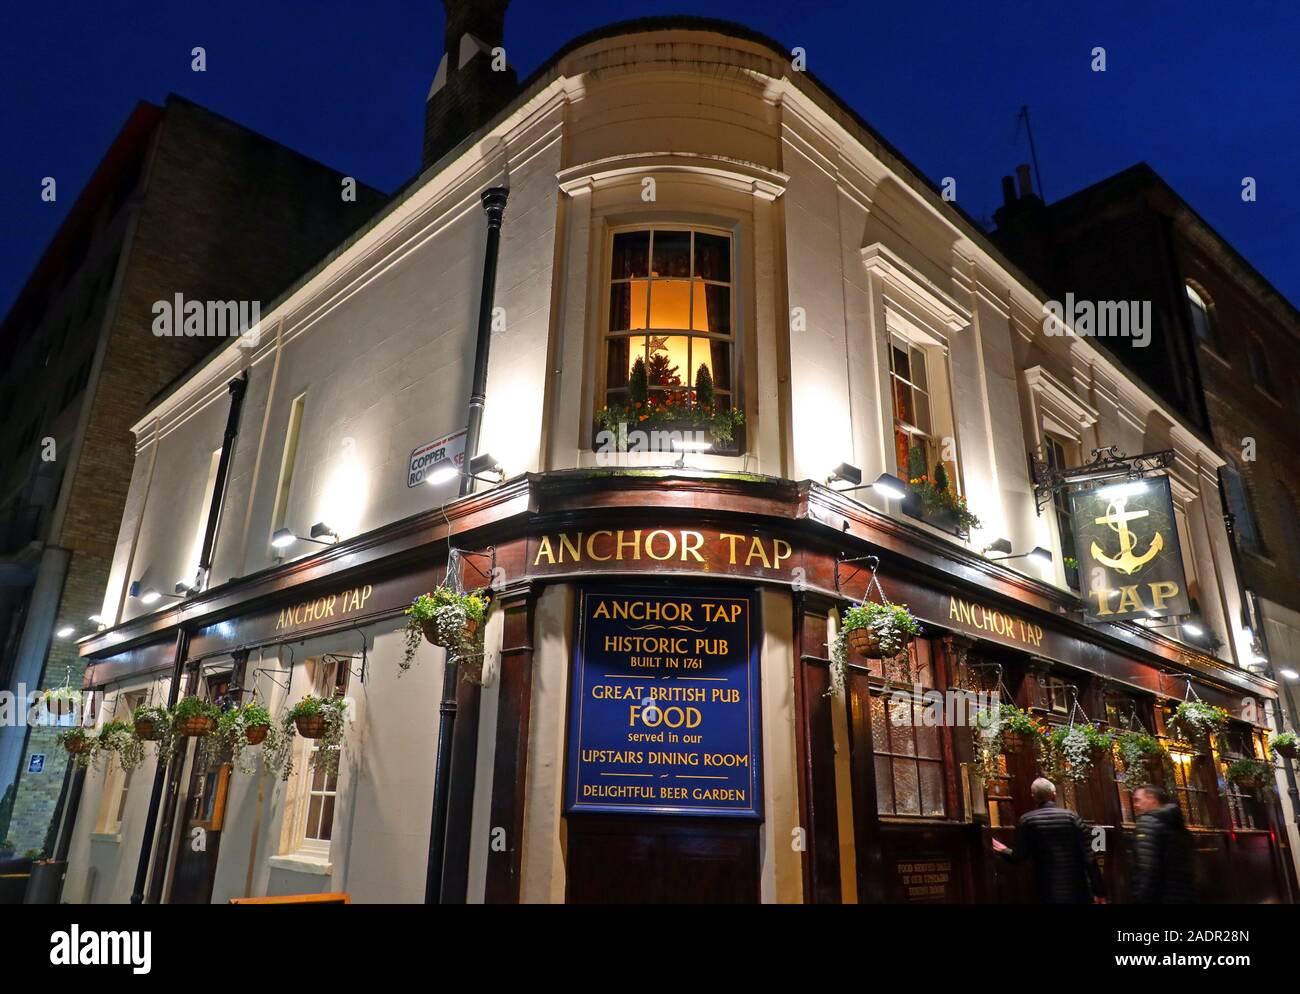 Anchor Tap, Historic Pub, Londres - 20A Horselydown Lane, South East London, Angleterre, Royaume-Uni, SE1 2LN, au crépuscule, nuit, soir Banque D'Images